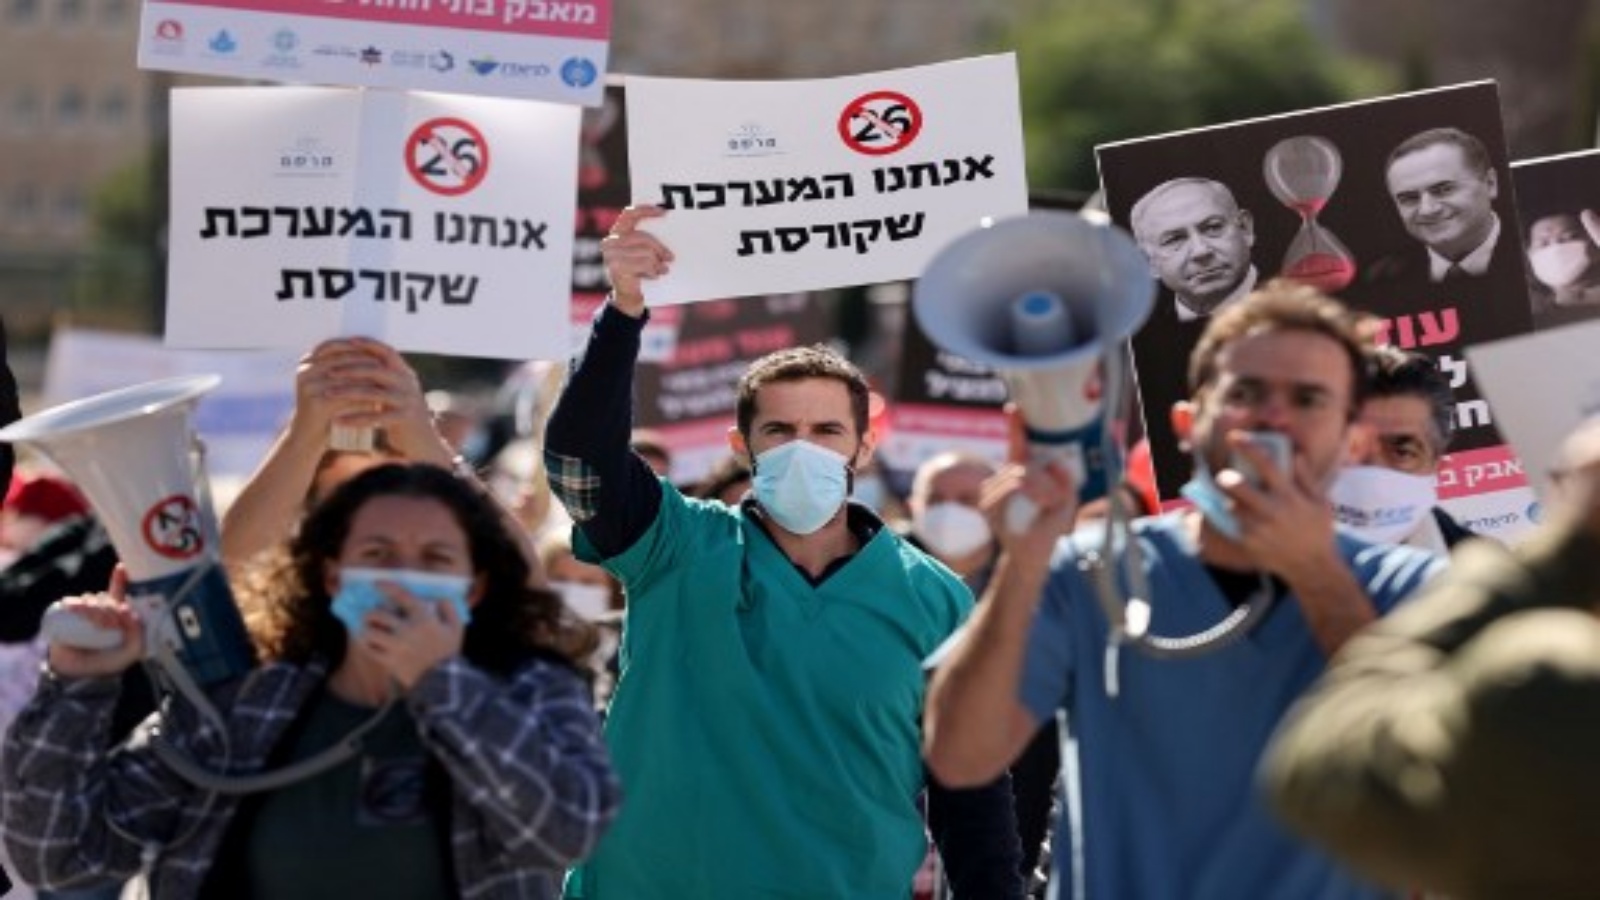 تظاهرة لطواقم طبية أمام مكتب نتانياهو للمطالبة بسد عجز ميزانيات المستشفيات